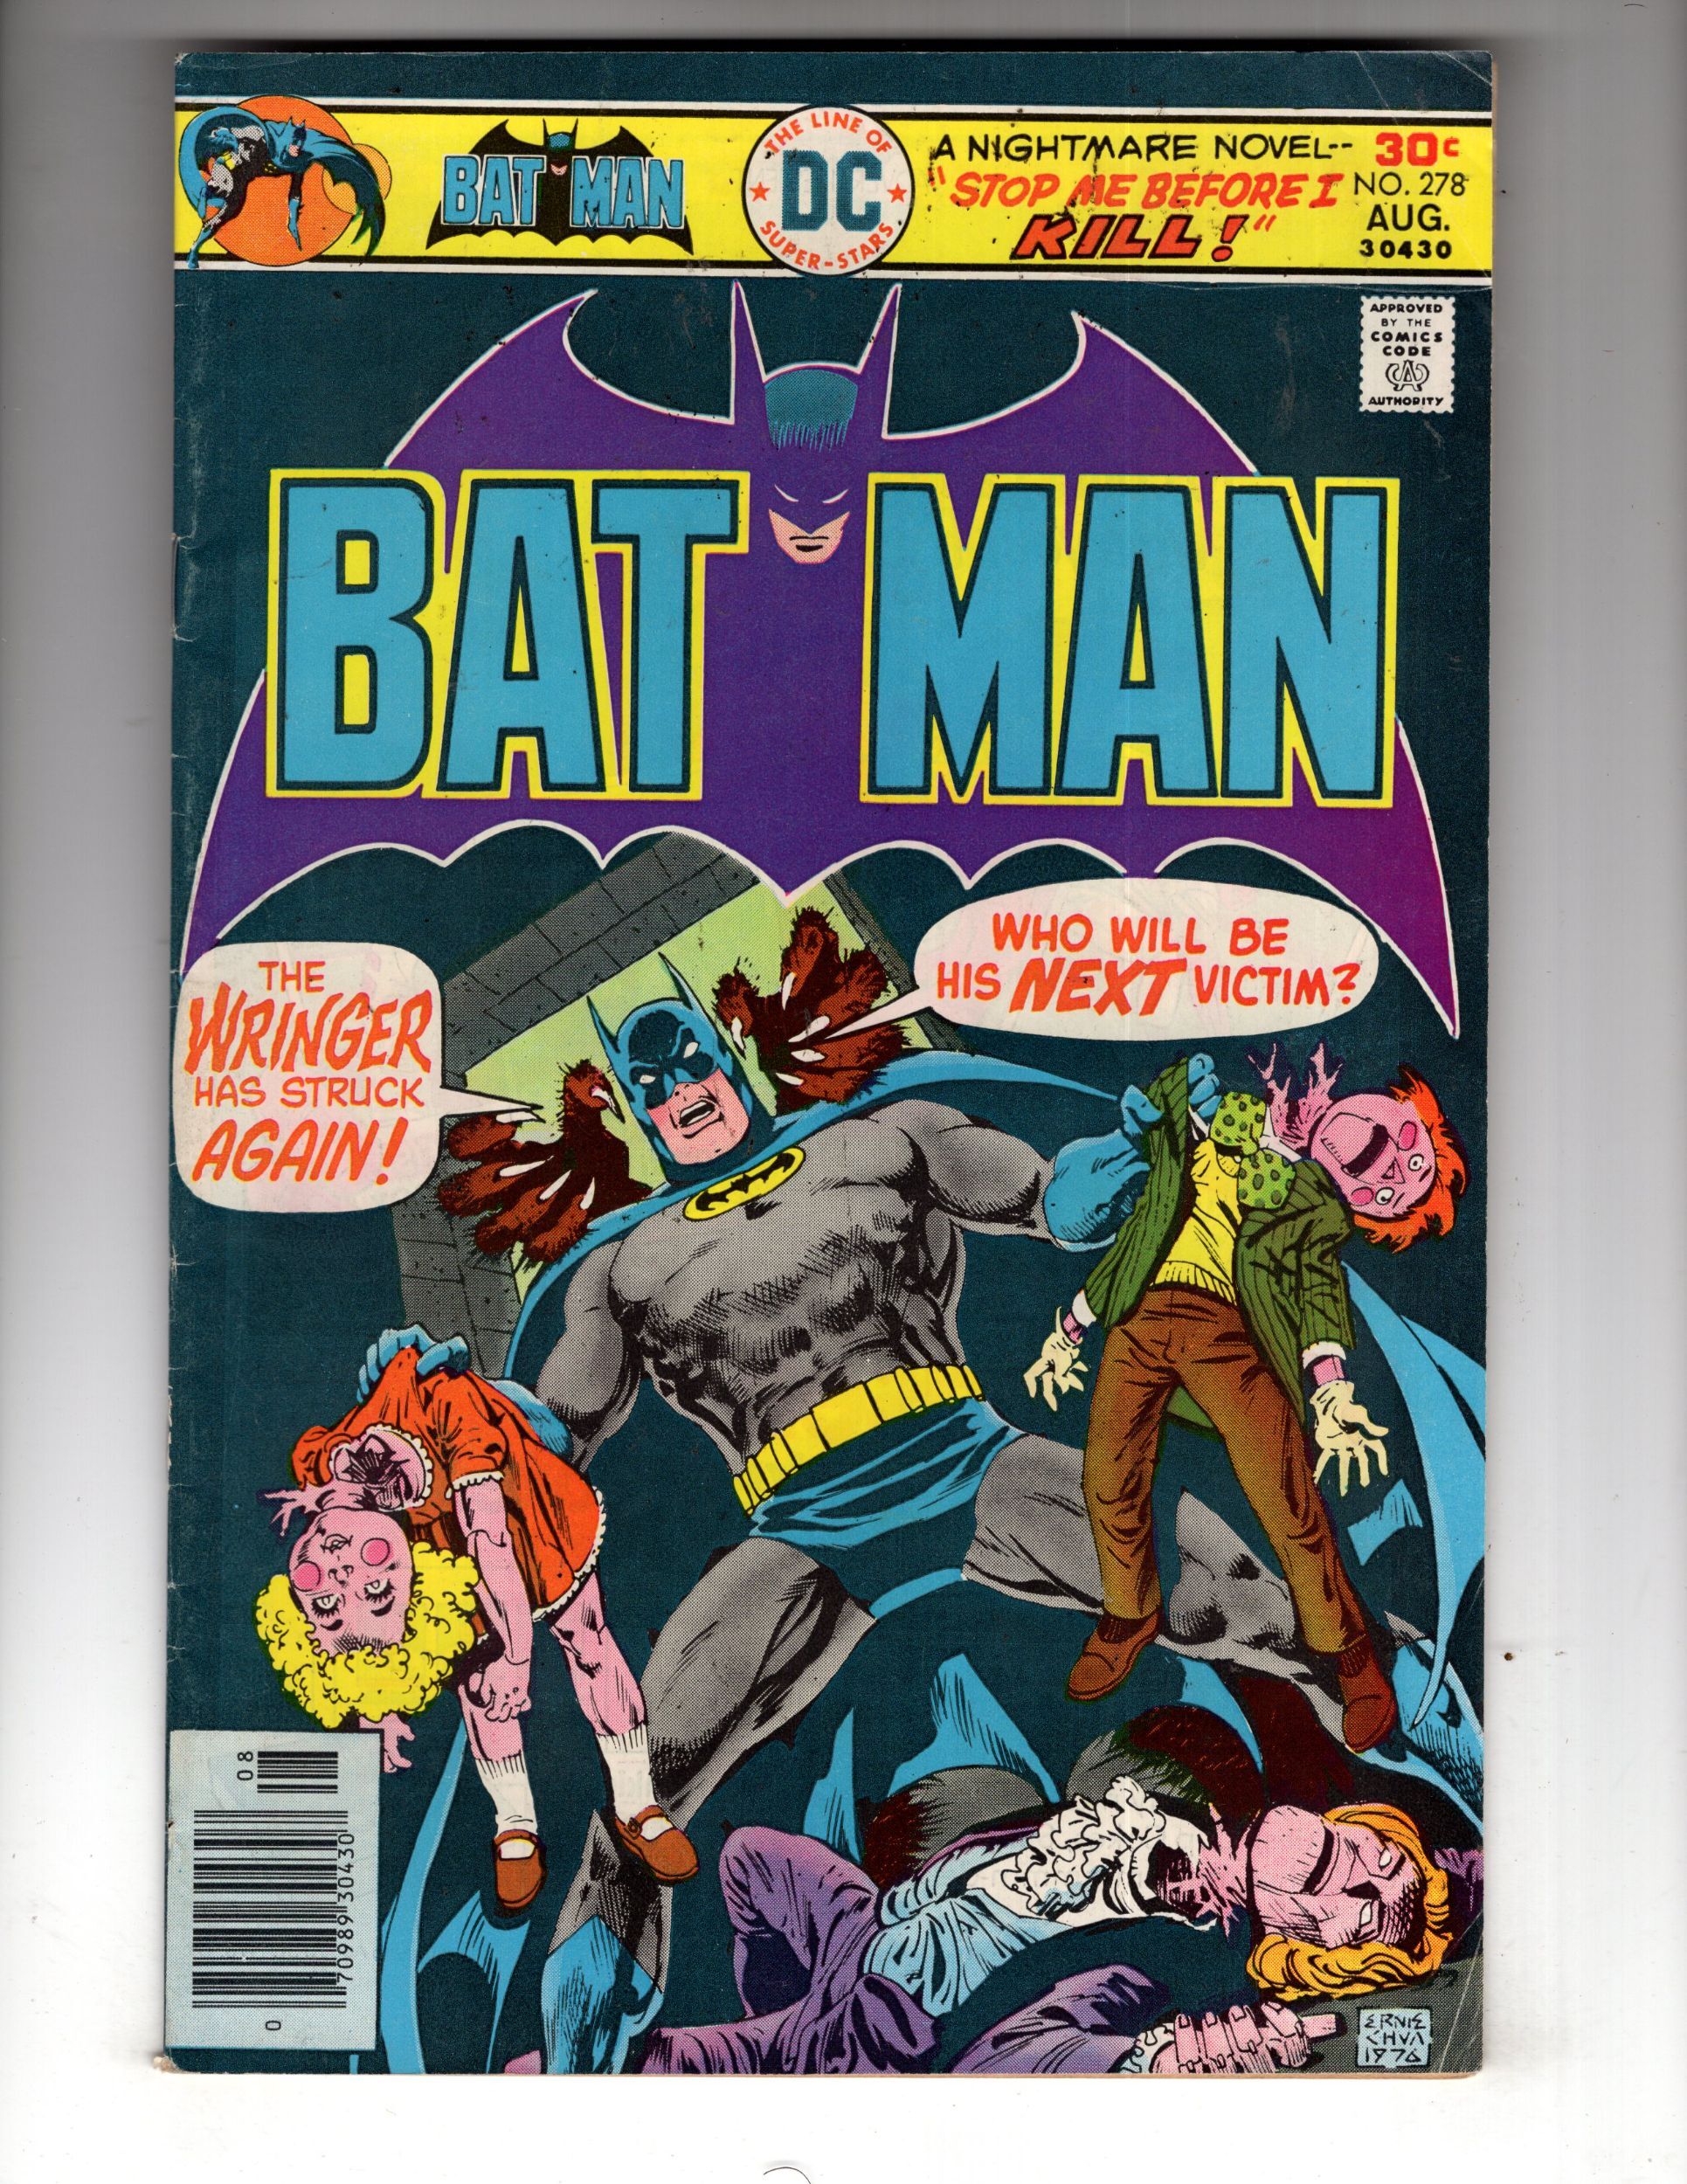 Batman #278 (1976) NG / EC#4 | Comic Books - Bronze Age, DC Comics, Batman,  Superhero / HipComic